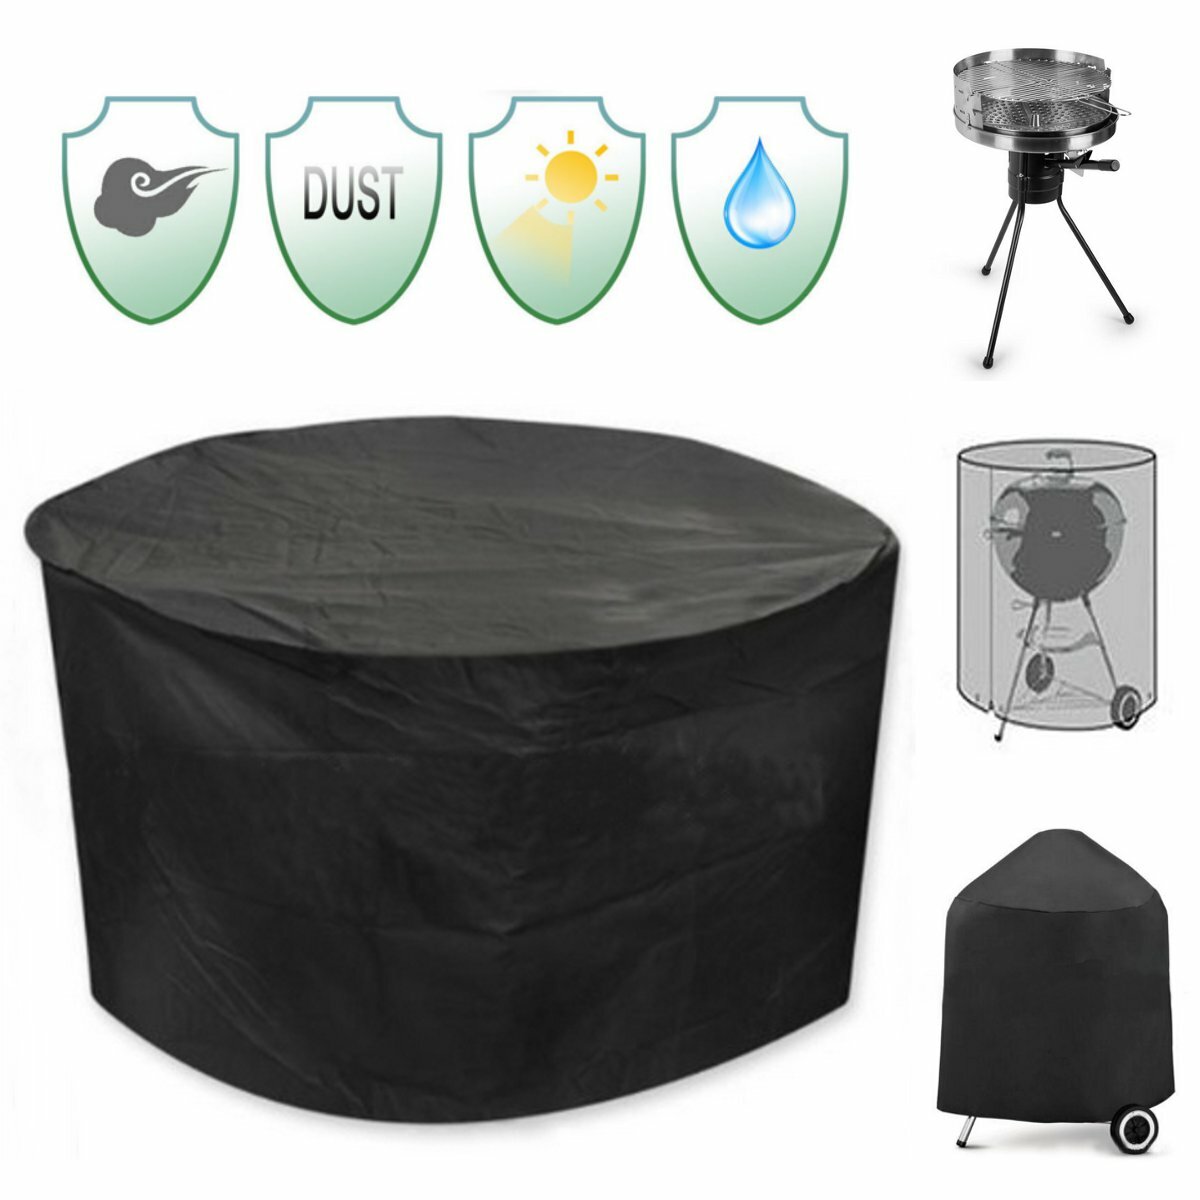 Vízálló UV-védő fedél egy 30 hüvelykes kerek teraszhálóhoz, székekhez, asztalhoz és menedékhez fekete színben